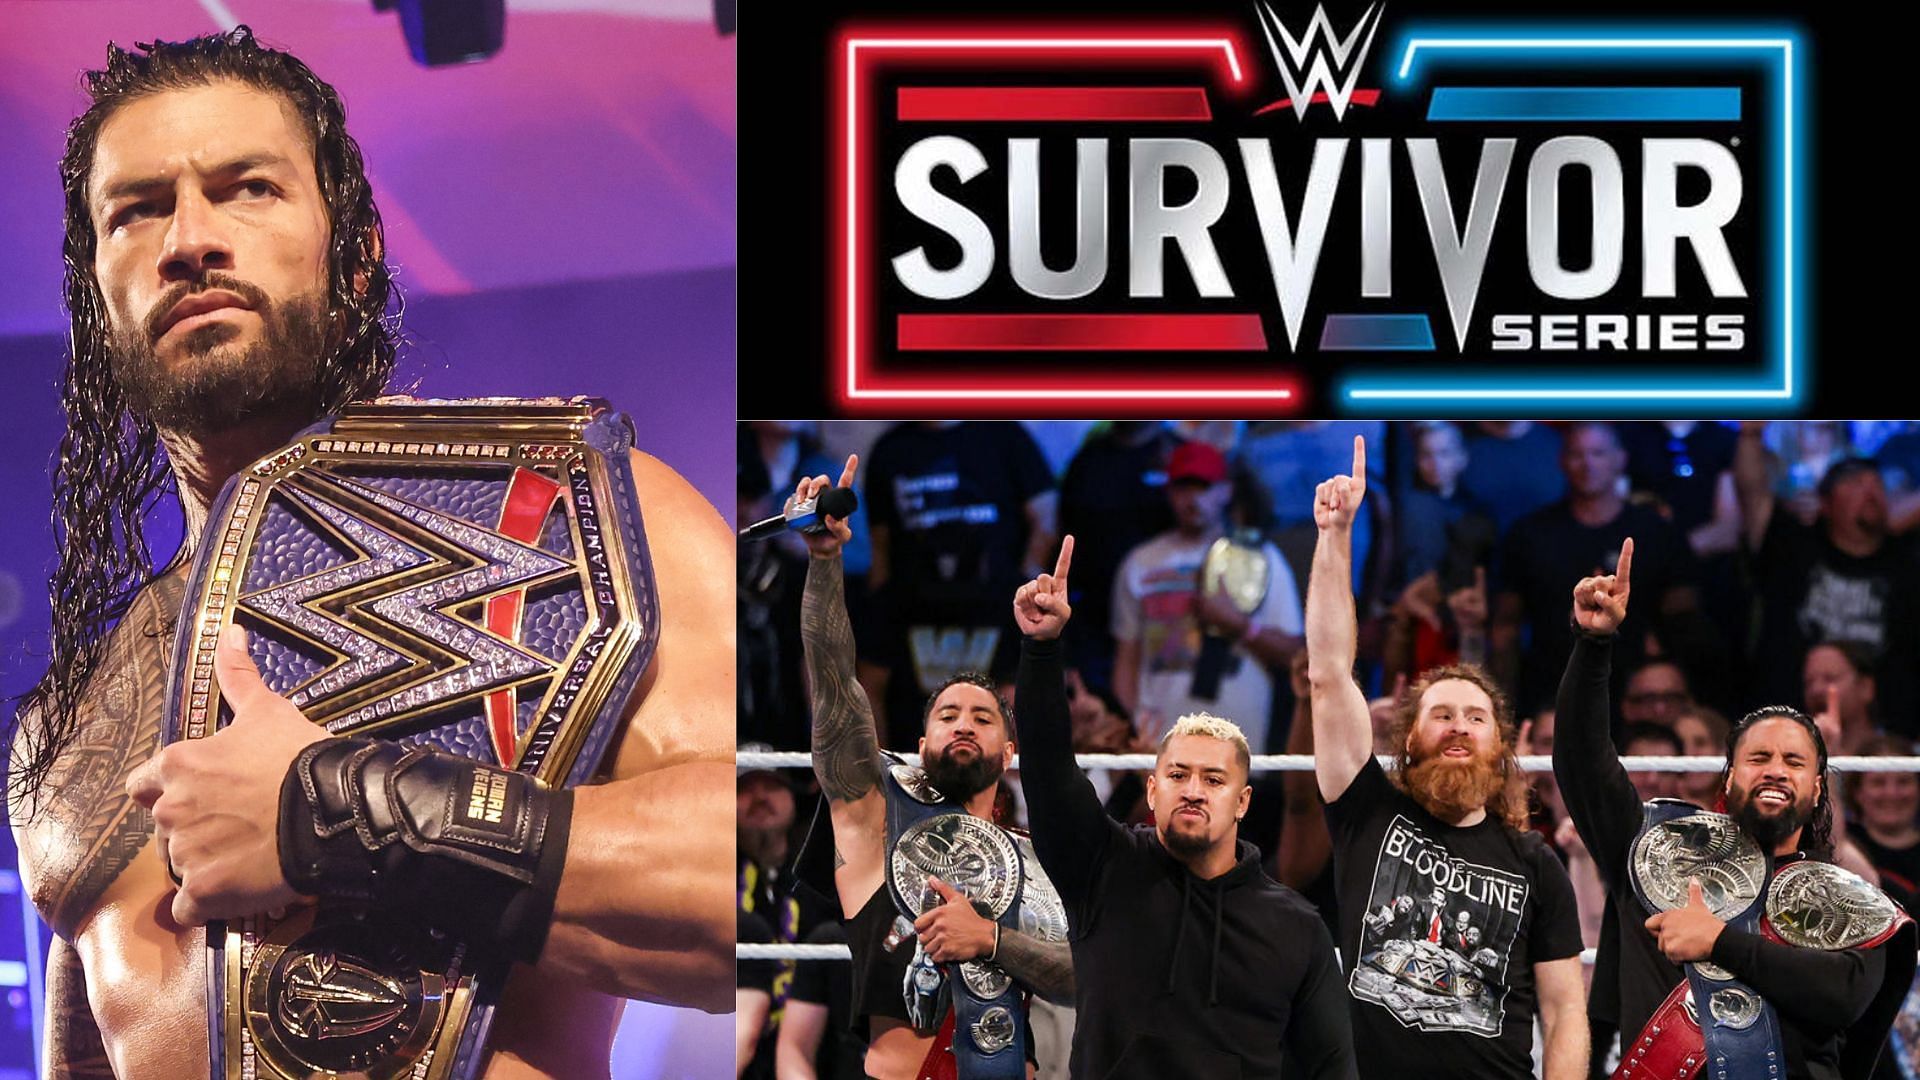 Survivor Series 2022 could be epic!